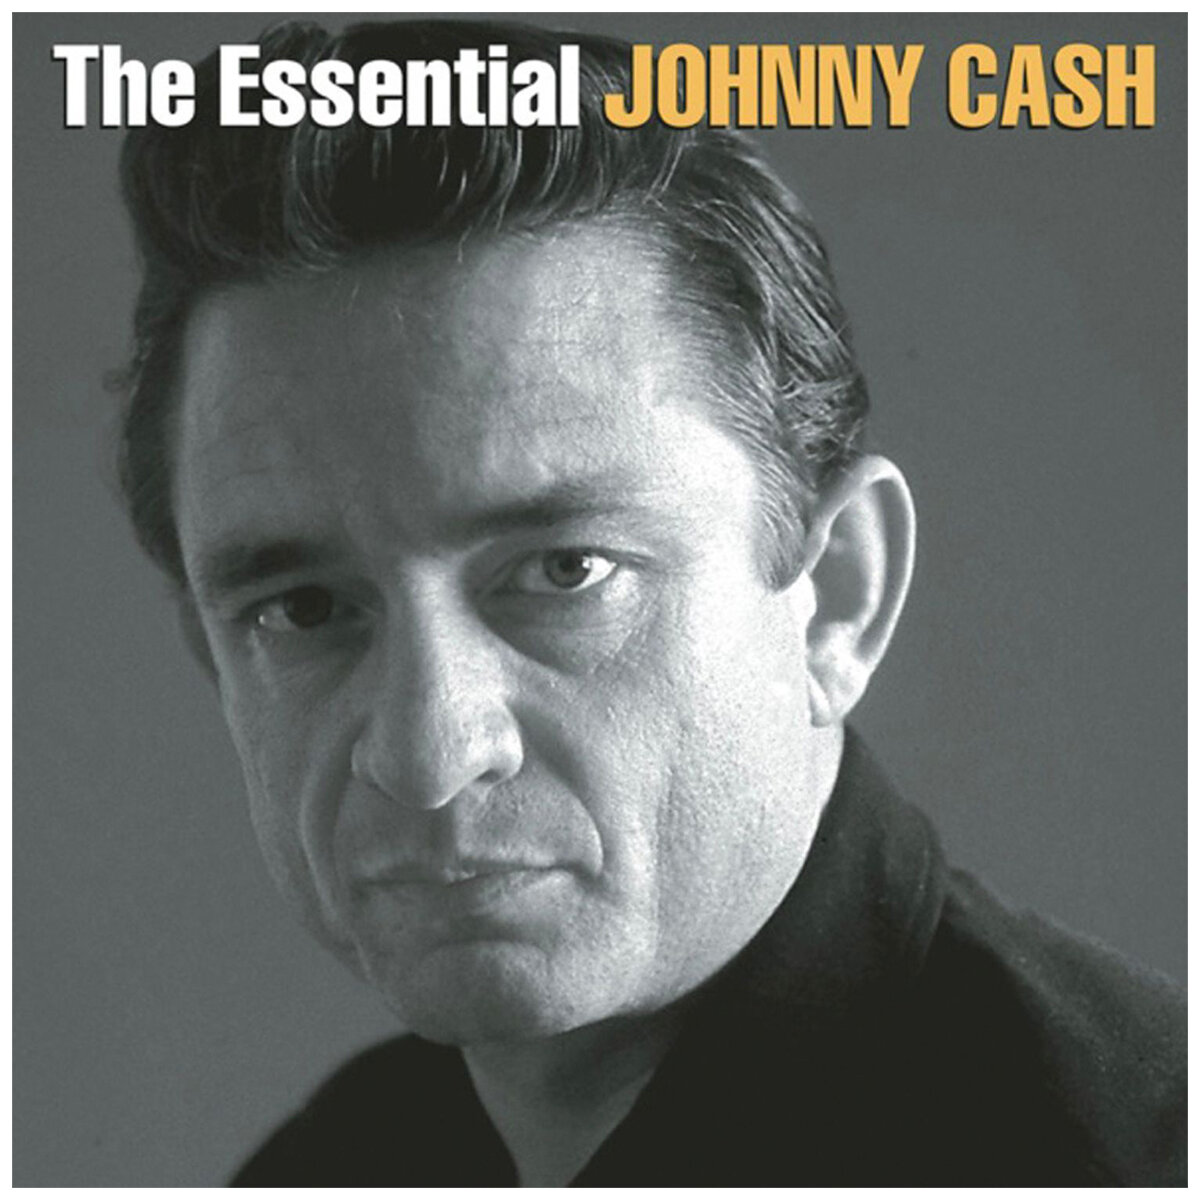 161112-Johnny Cash The Essential Johnny Cash Vinyl Album